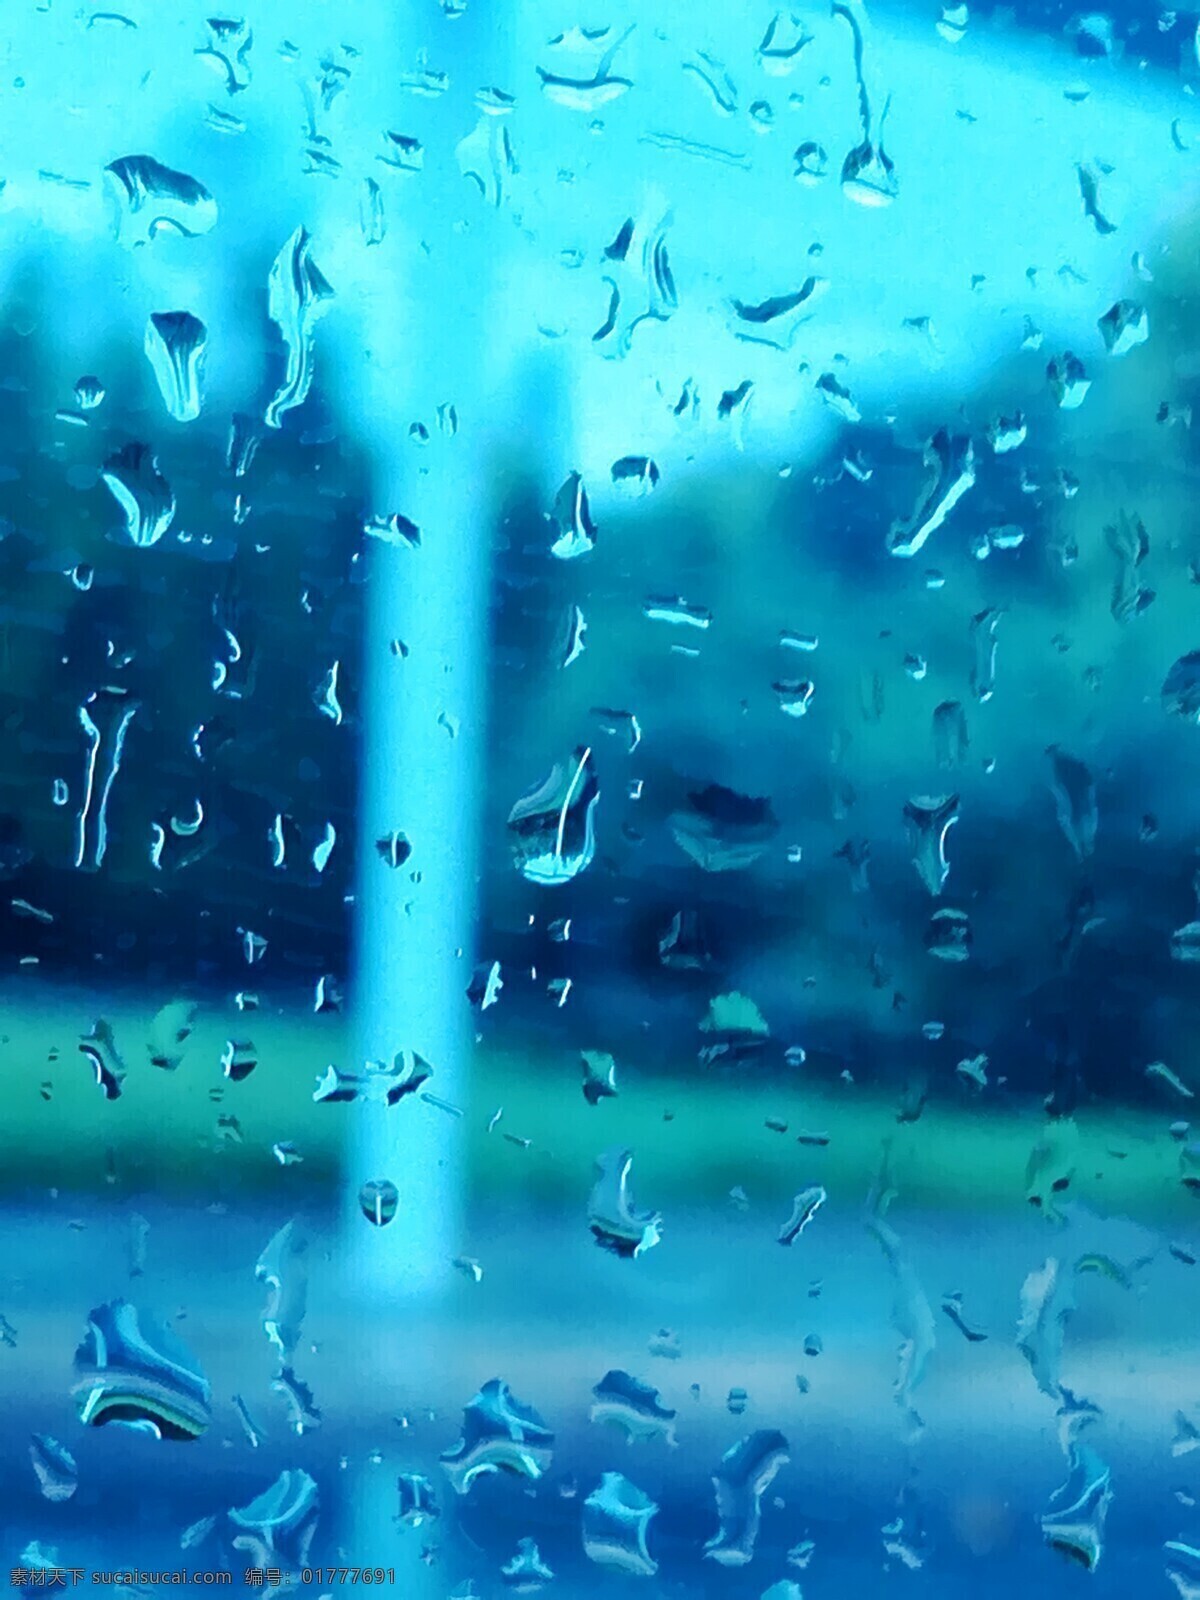 雨露 小雨 窗外小雨 雨水 玻璃上的雨水 水滴 风景 自然景观 自然风景